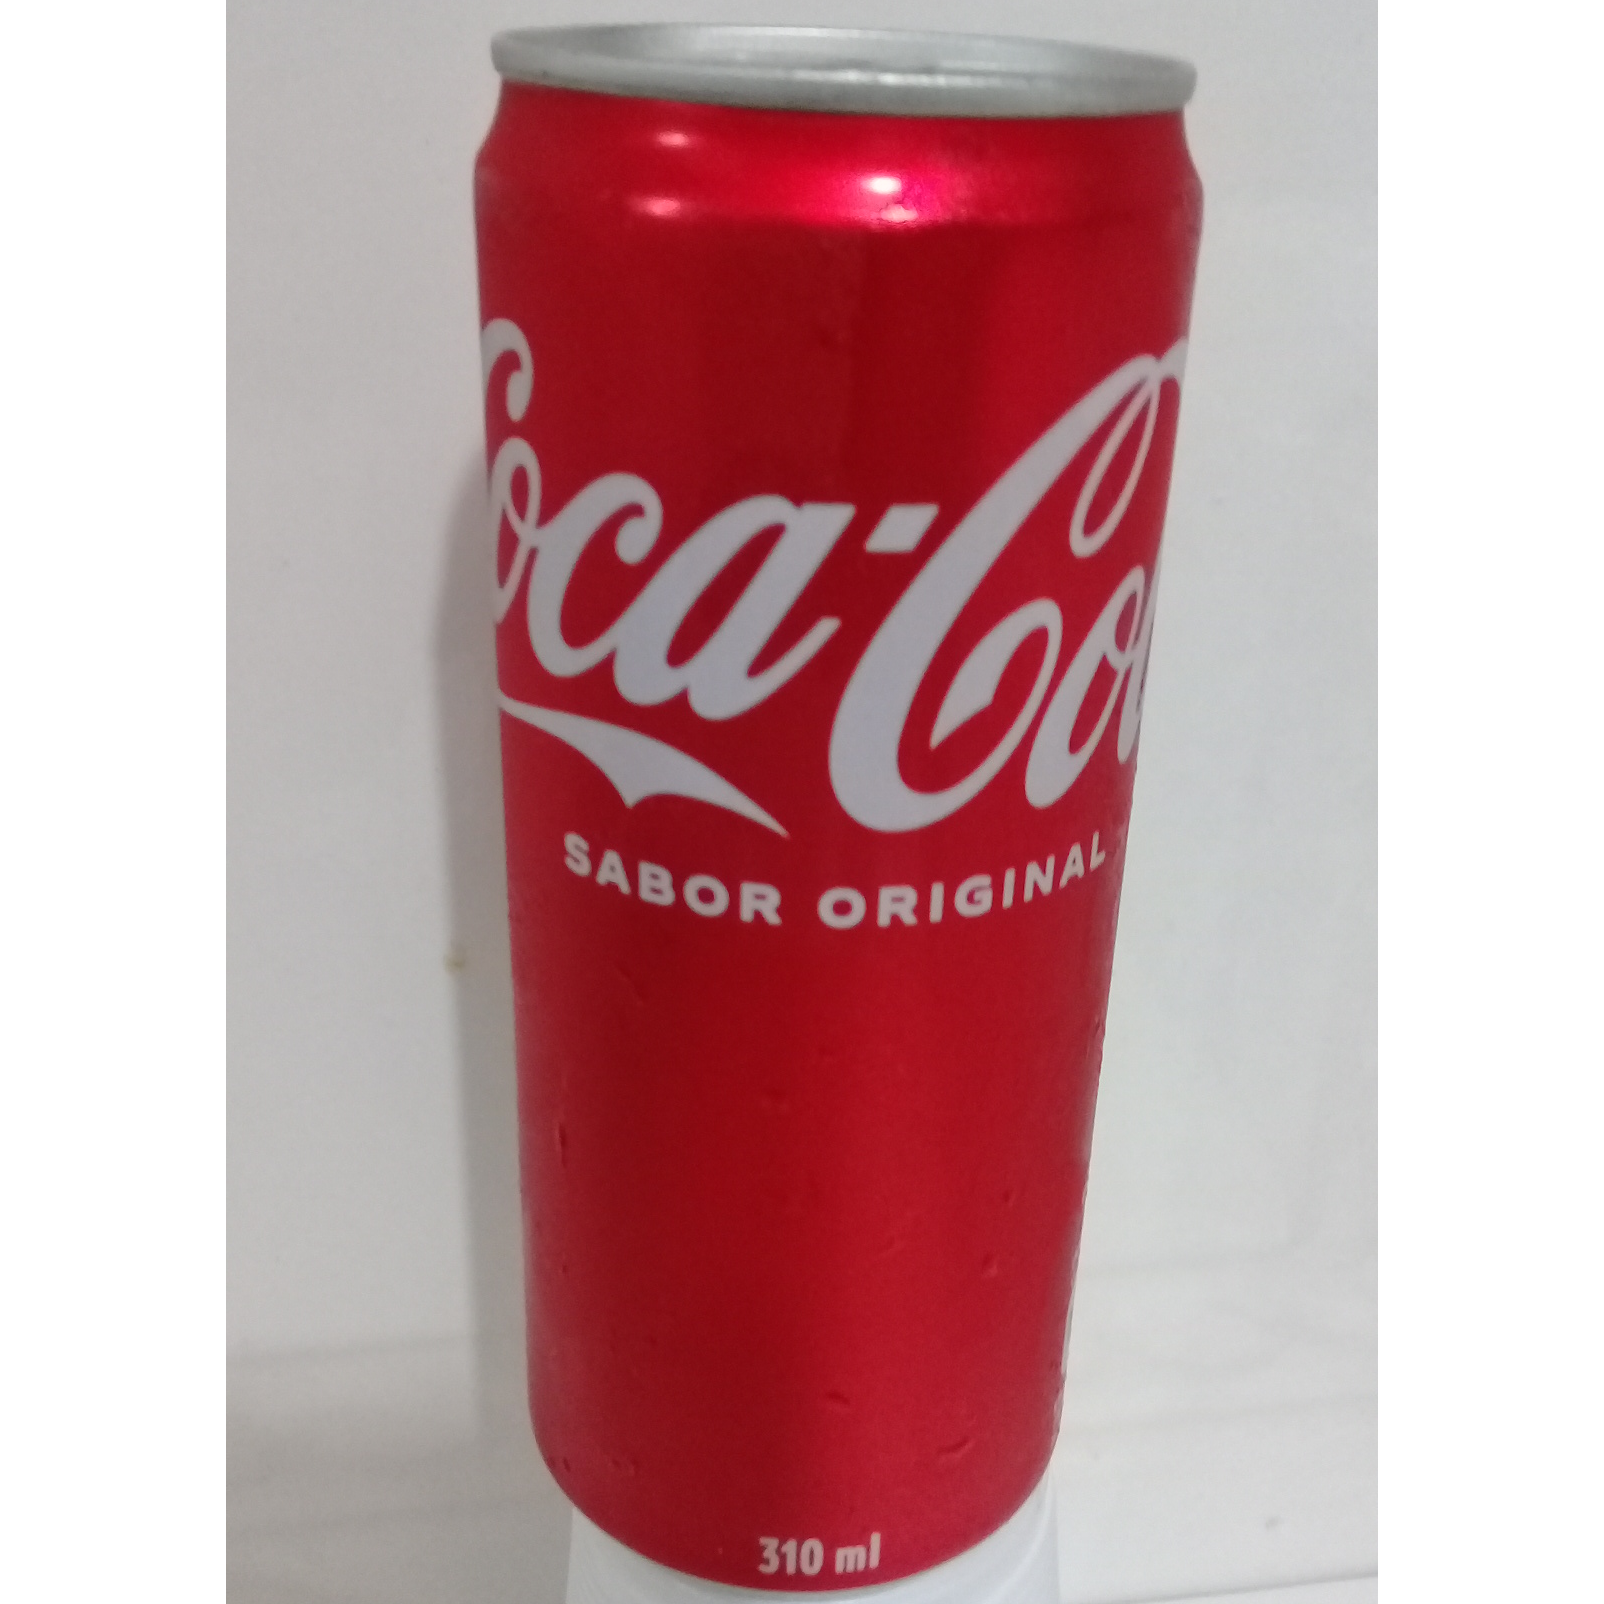 Xis Completo + Coca-Cola lata